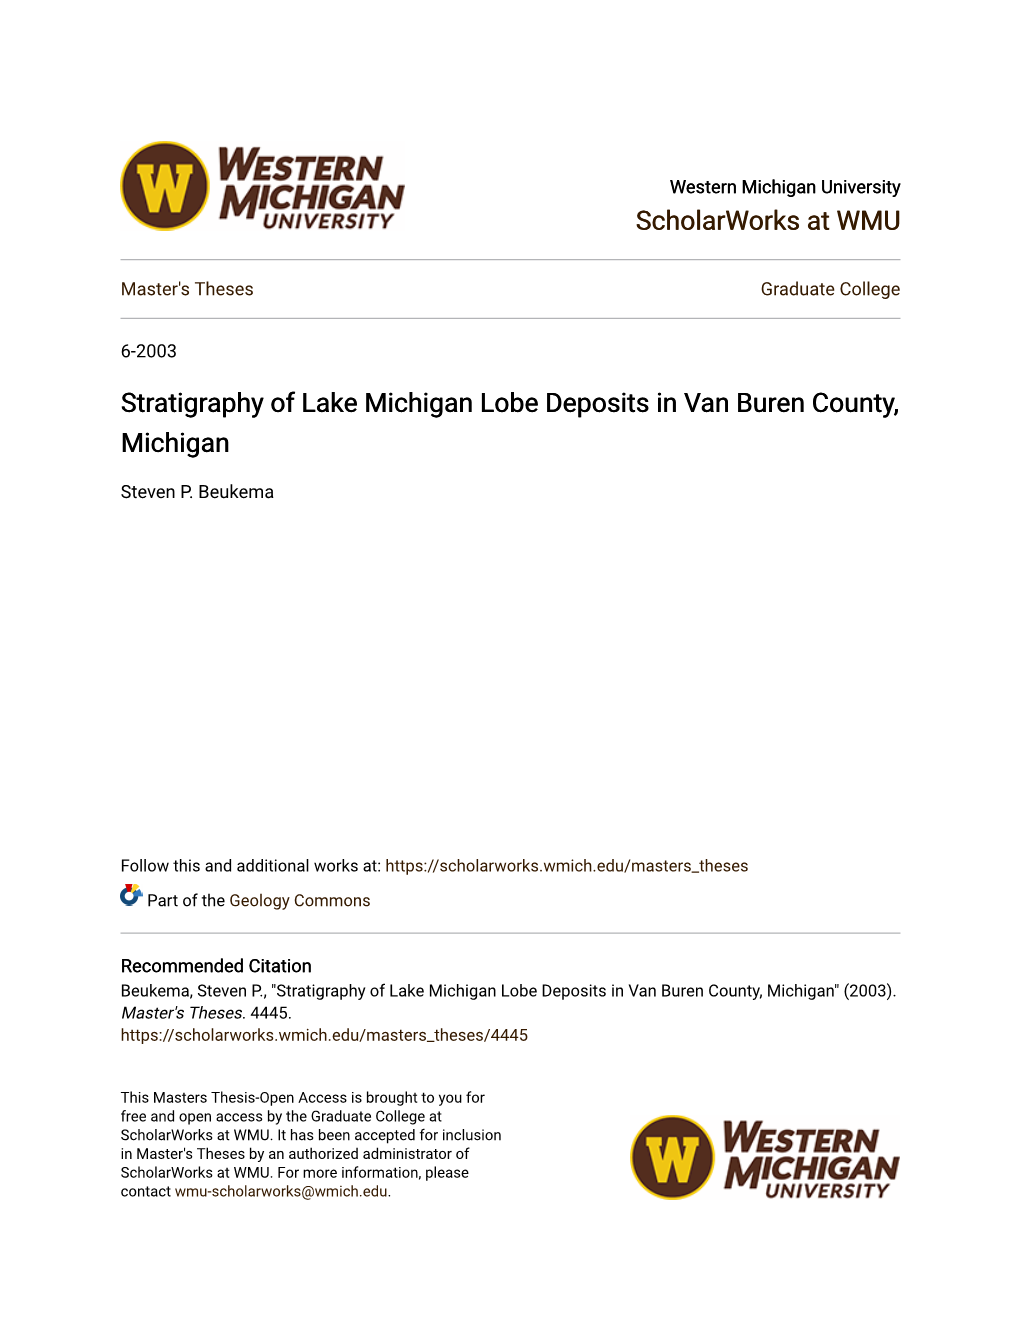 Stratigraphy of Lake Michigan Lobe Deposits in Van Buren County, Michigan